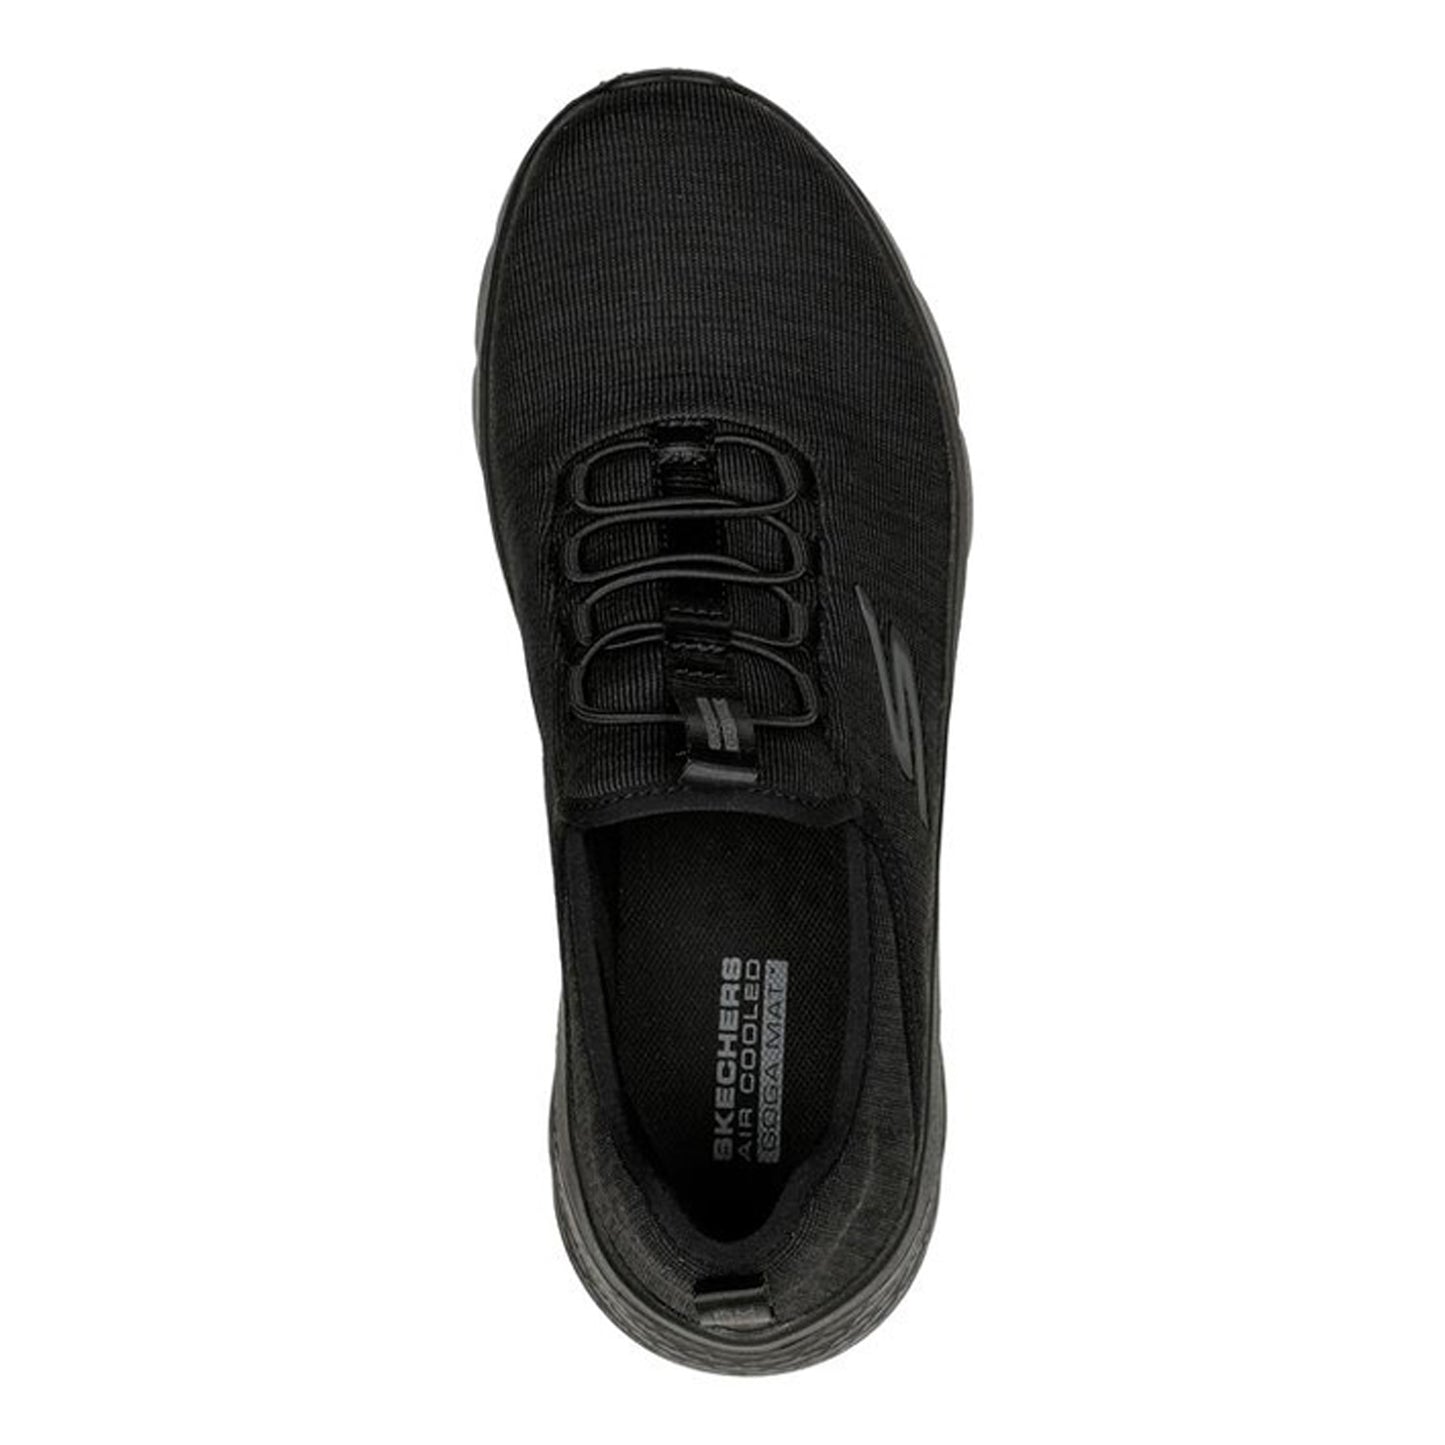 Peltz Shoes  Women's Skechers GO WALK FLEX - Lucy Sneaker BLACK 124956-BBK